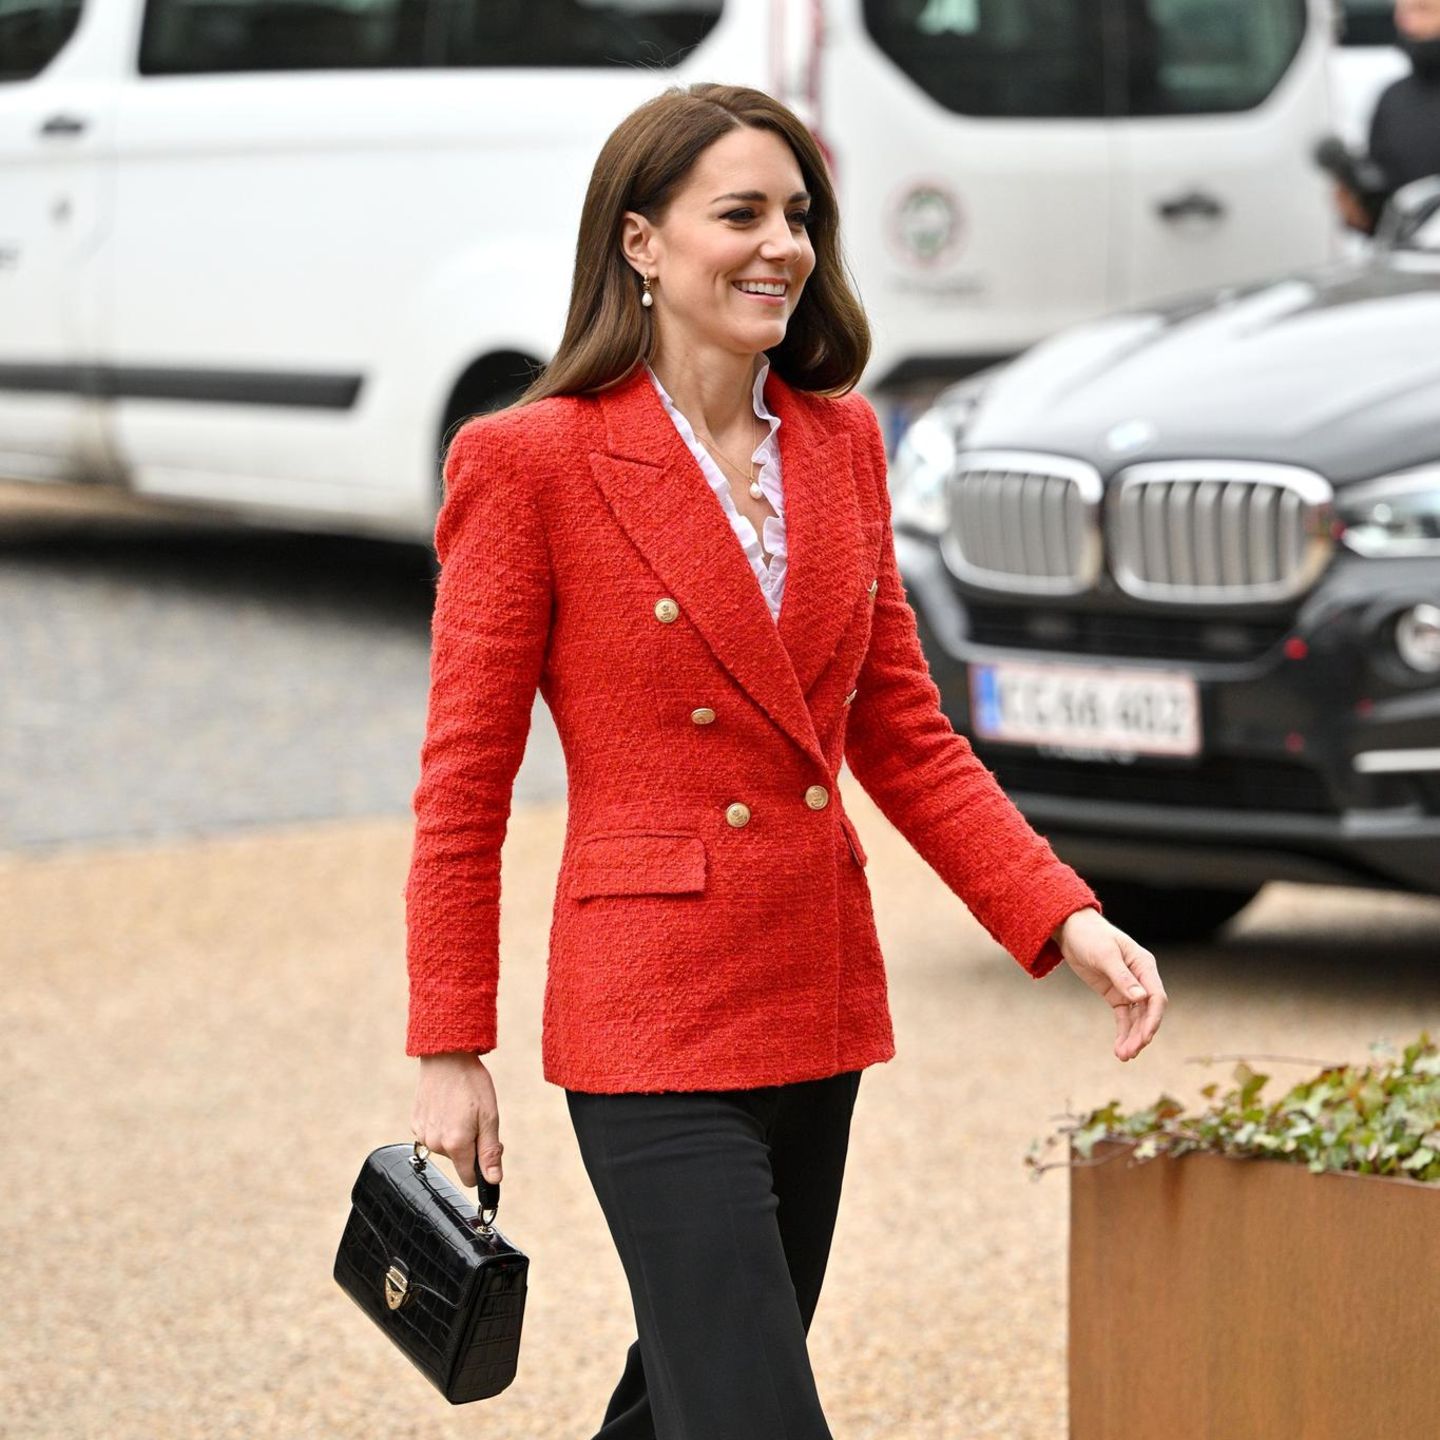 Vom 22. bis 23. Februar besucht Herzogin Catherine Kopenhagen. Für ihren ersten Auftritt setzt sie auf ein Teil, das sie schon einmal getragen hat: Den roten Blazer von Zara kombiniert sie zu einer schwarzen Hose, einer weißer Rüschenbluse und schwarzer Handtasche. Klassisch, elegant und stilvoll – so kennen wir Kate.